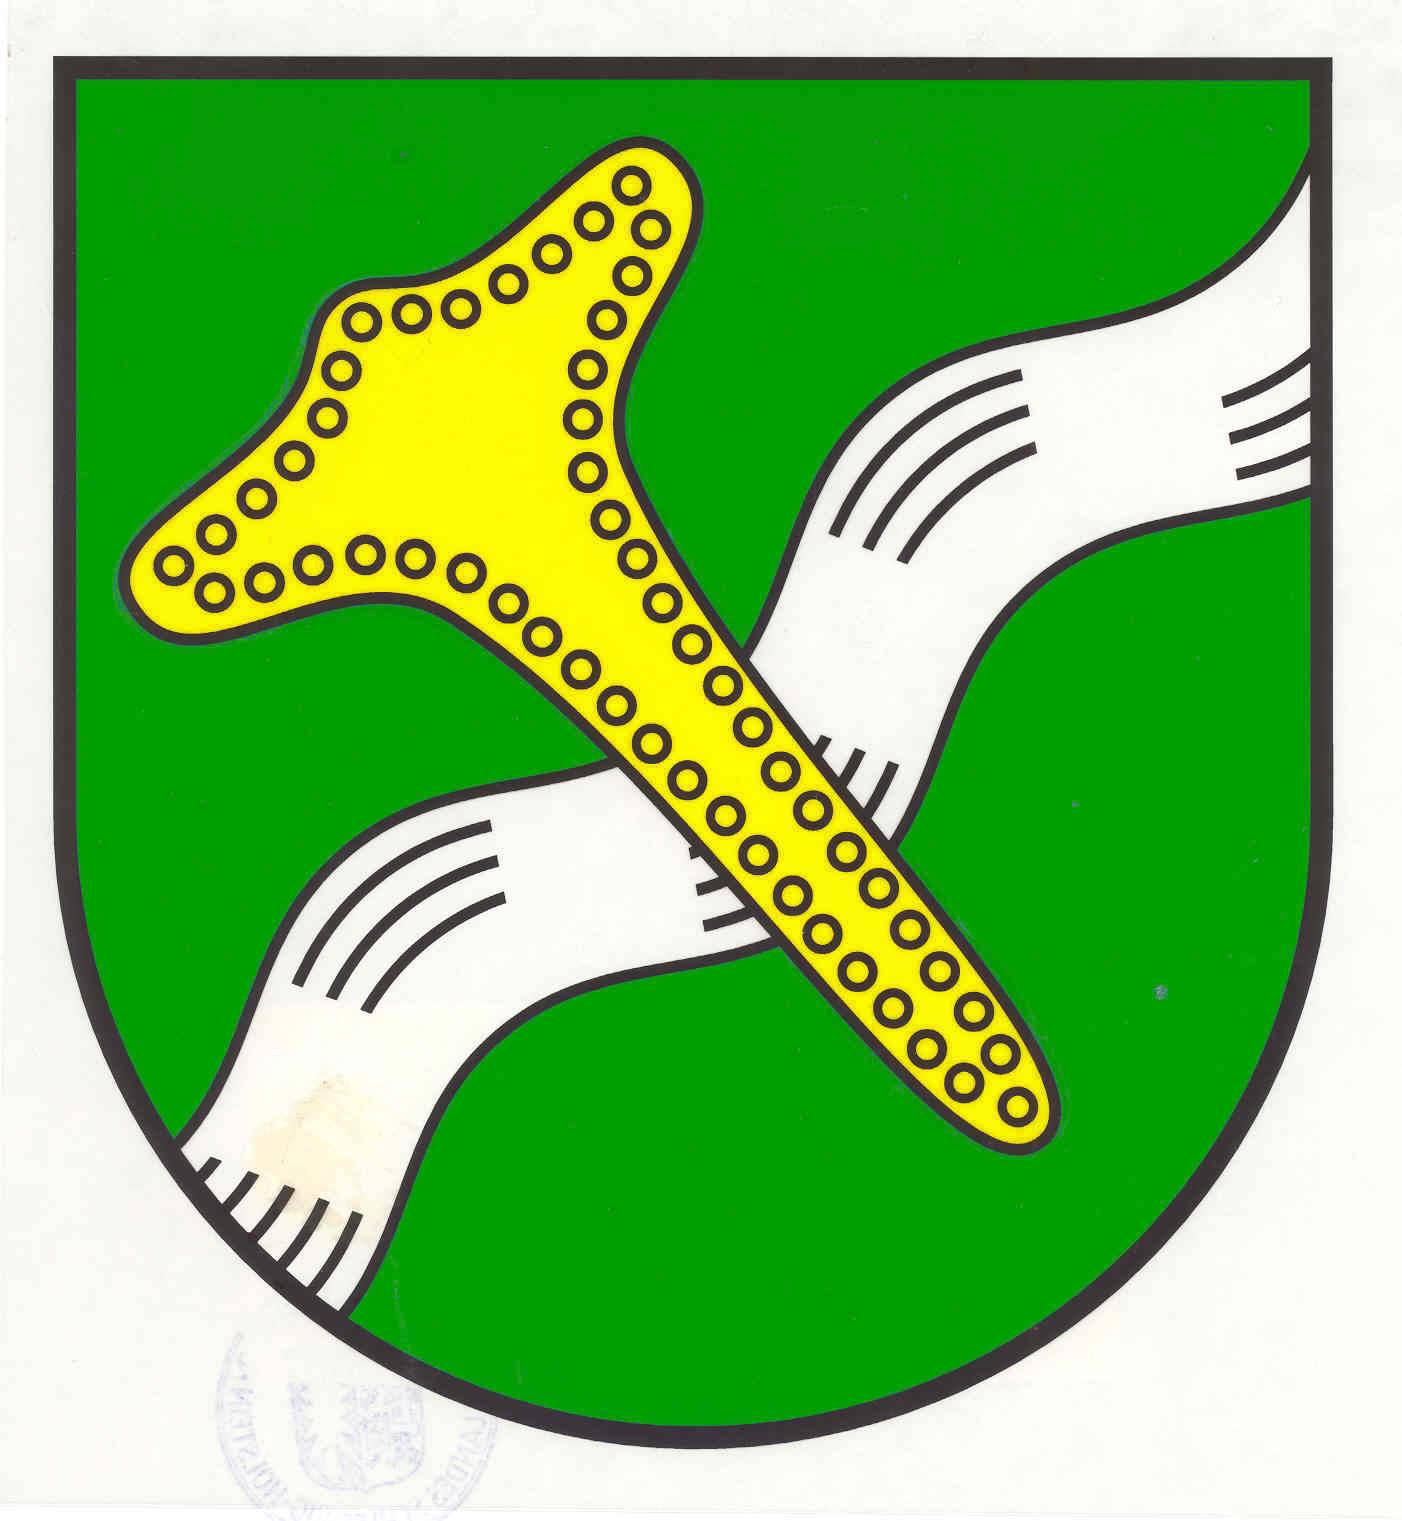 Wappen Gemeinde Taarstedt, Kreis Schleswig-Flensburg